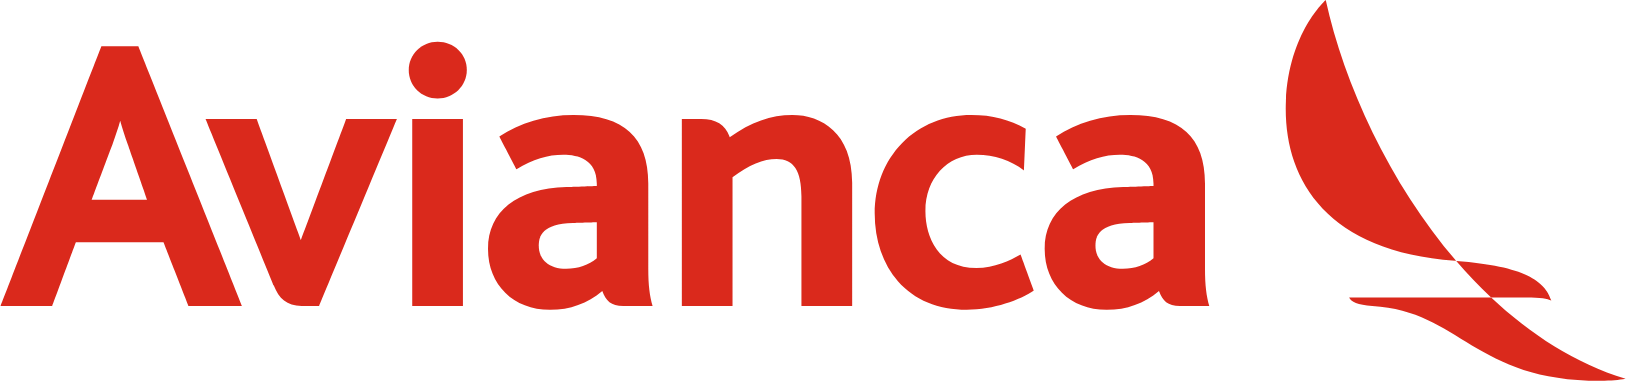 Avianca logo large (transparent PNG)